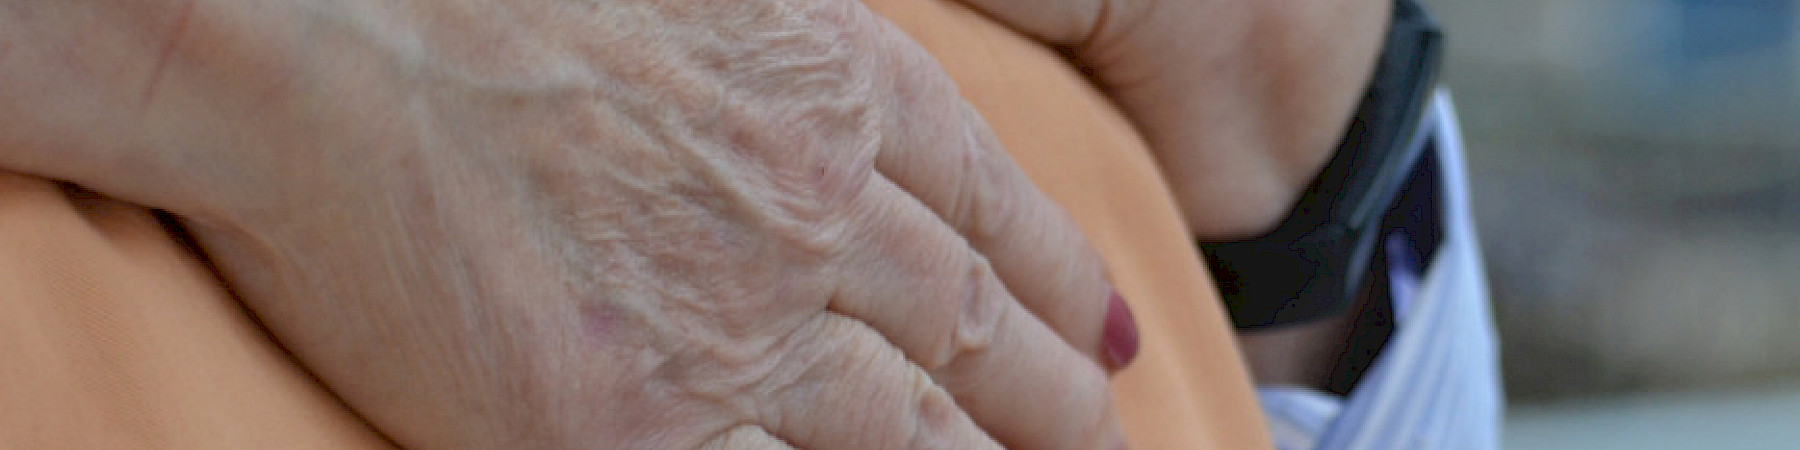 88-vuotias Marita vastaa aviomiehensä hoidosta 24/7: "Omaishoito on henkisesti rankkaa, puolison muistamattomuus tuntuu murheelliselta"